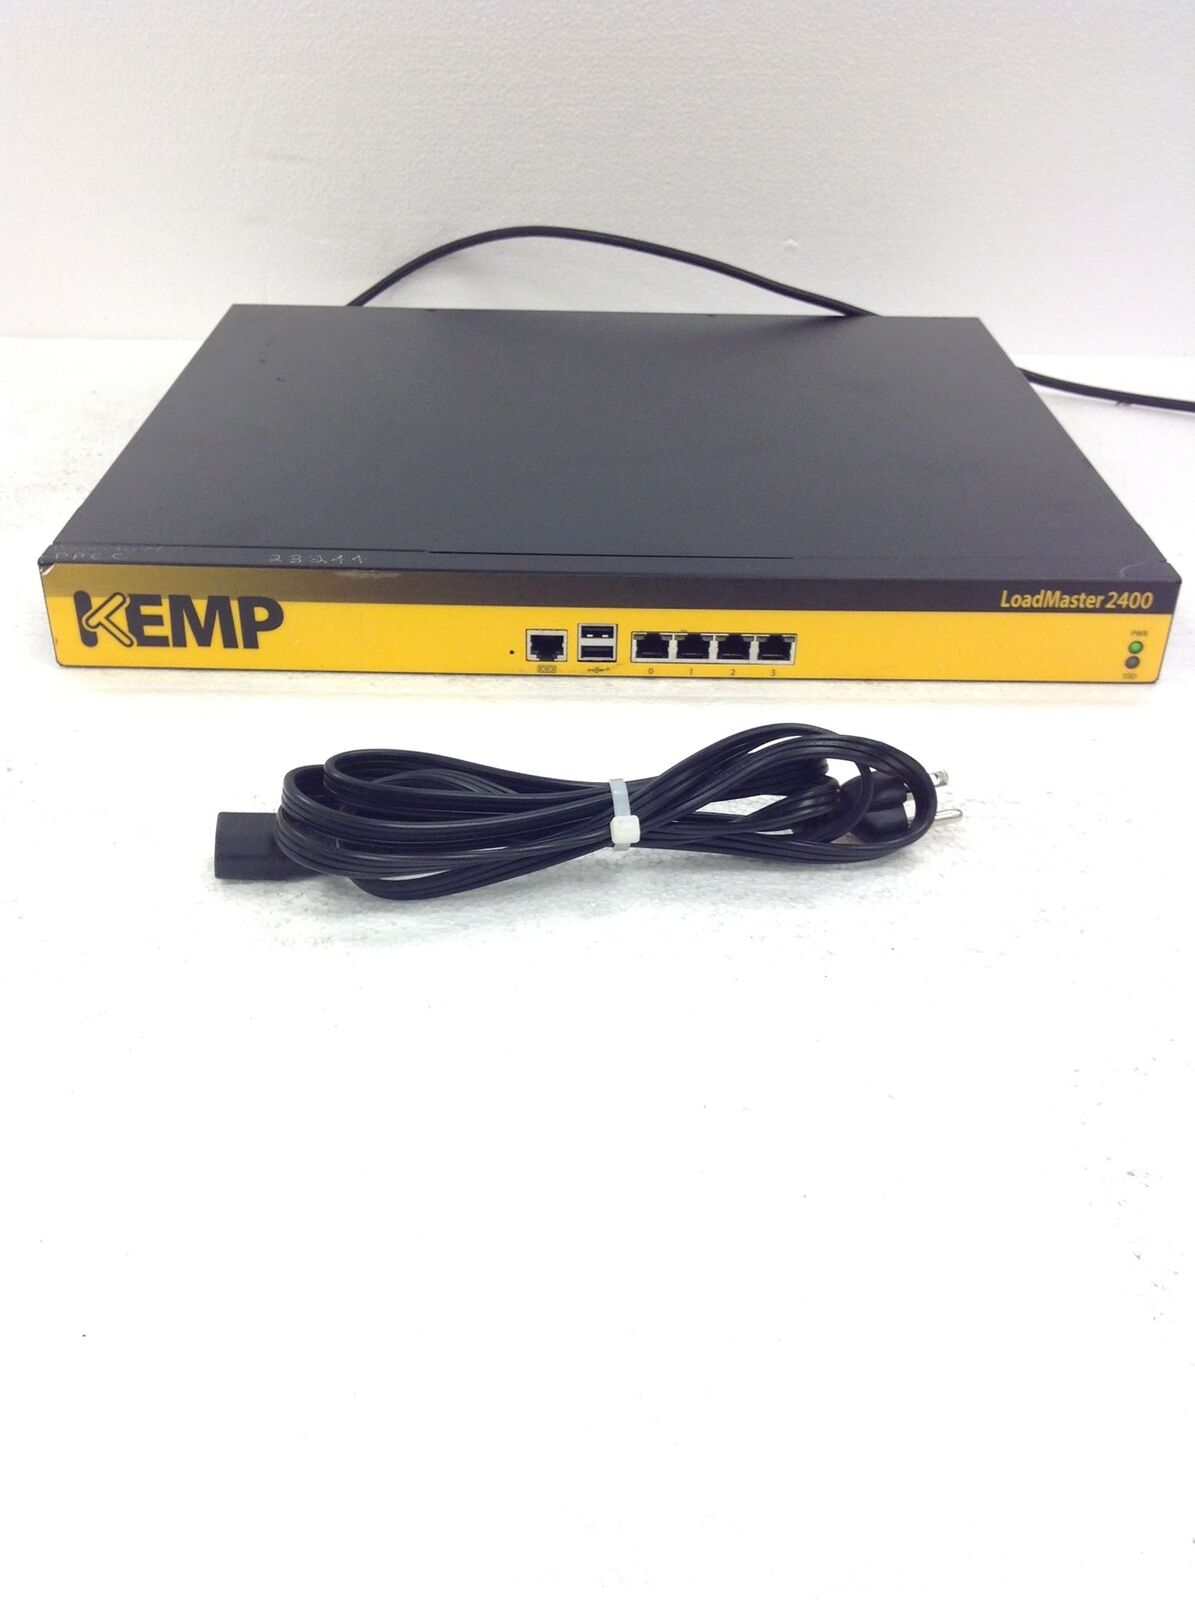 Kemp Loadmaster 2400 NSA3130-LM2400 Intel Celeron G1620 2.70Ghz Server w/1GBDDR3